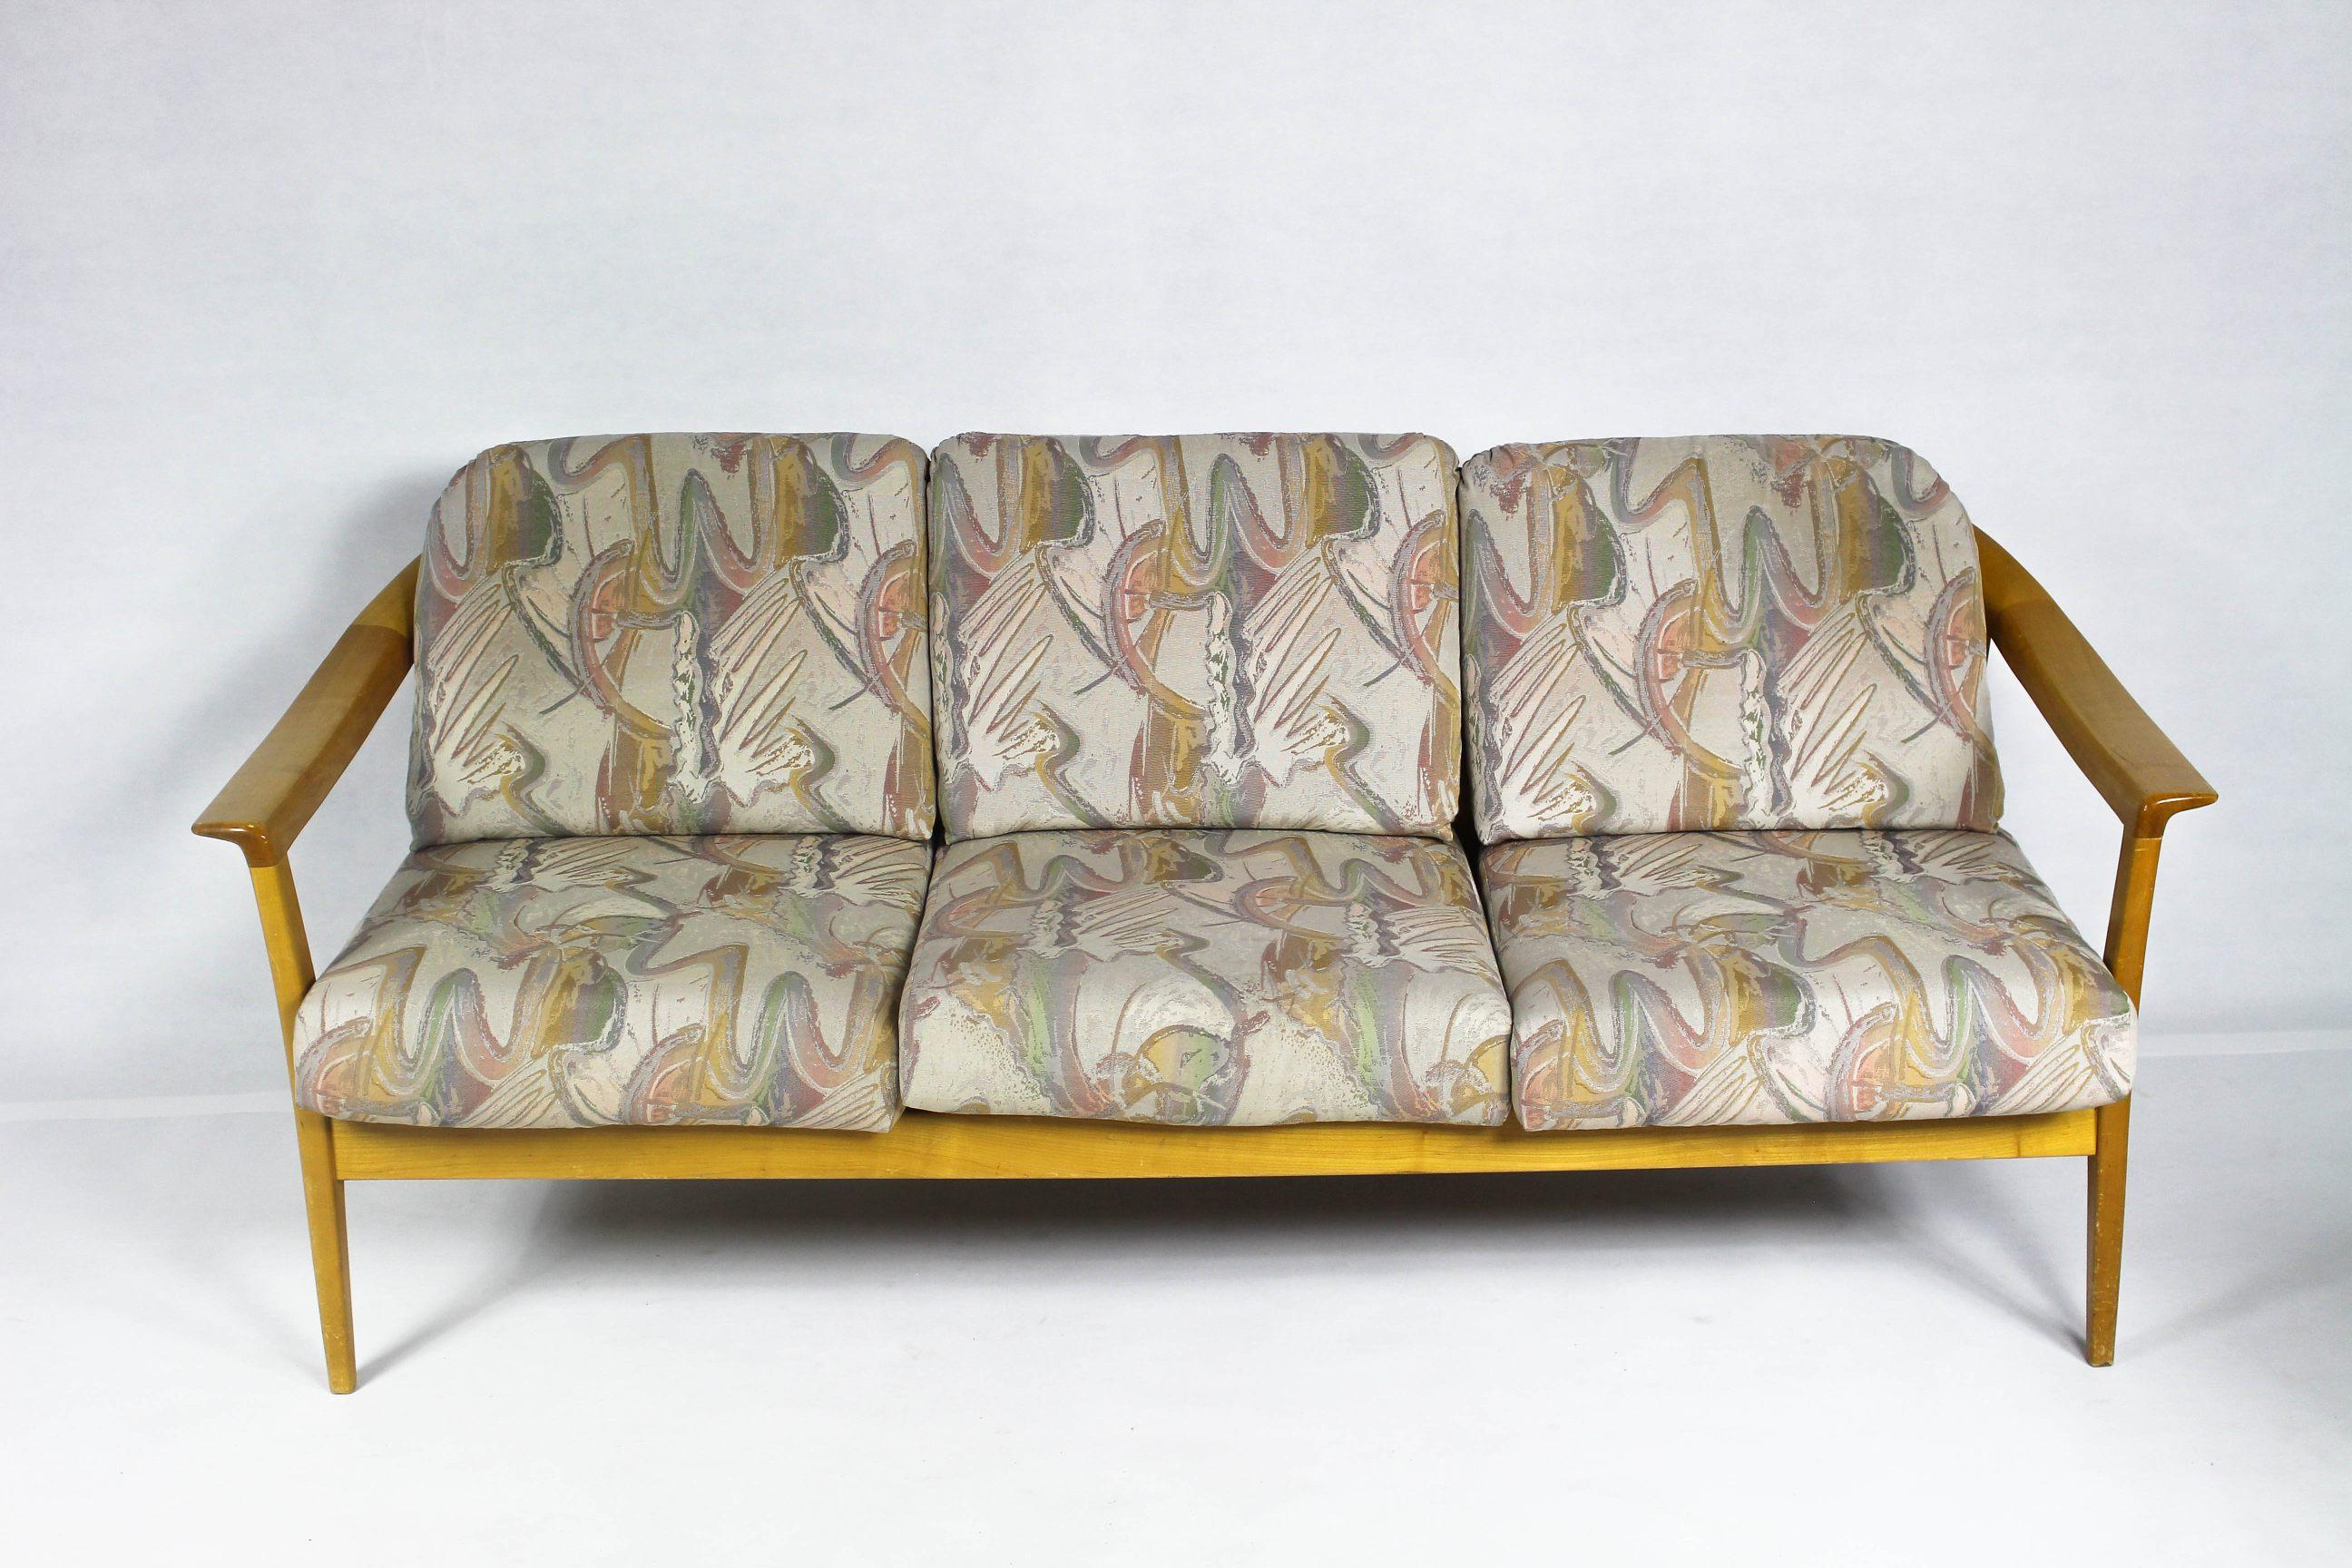 Canapé vintage en bois de cerisier, fabriqué par Wilhelm Knoll.
Le canapé a une bonne structure et des accoudoirs bien dessinés.
Disponible également avec 2 chaises.